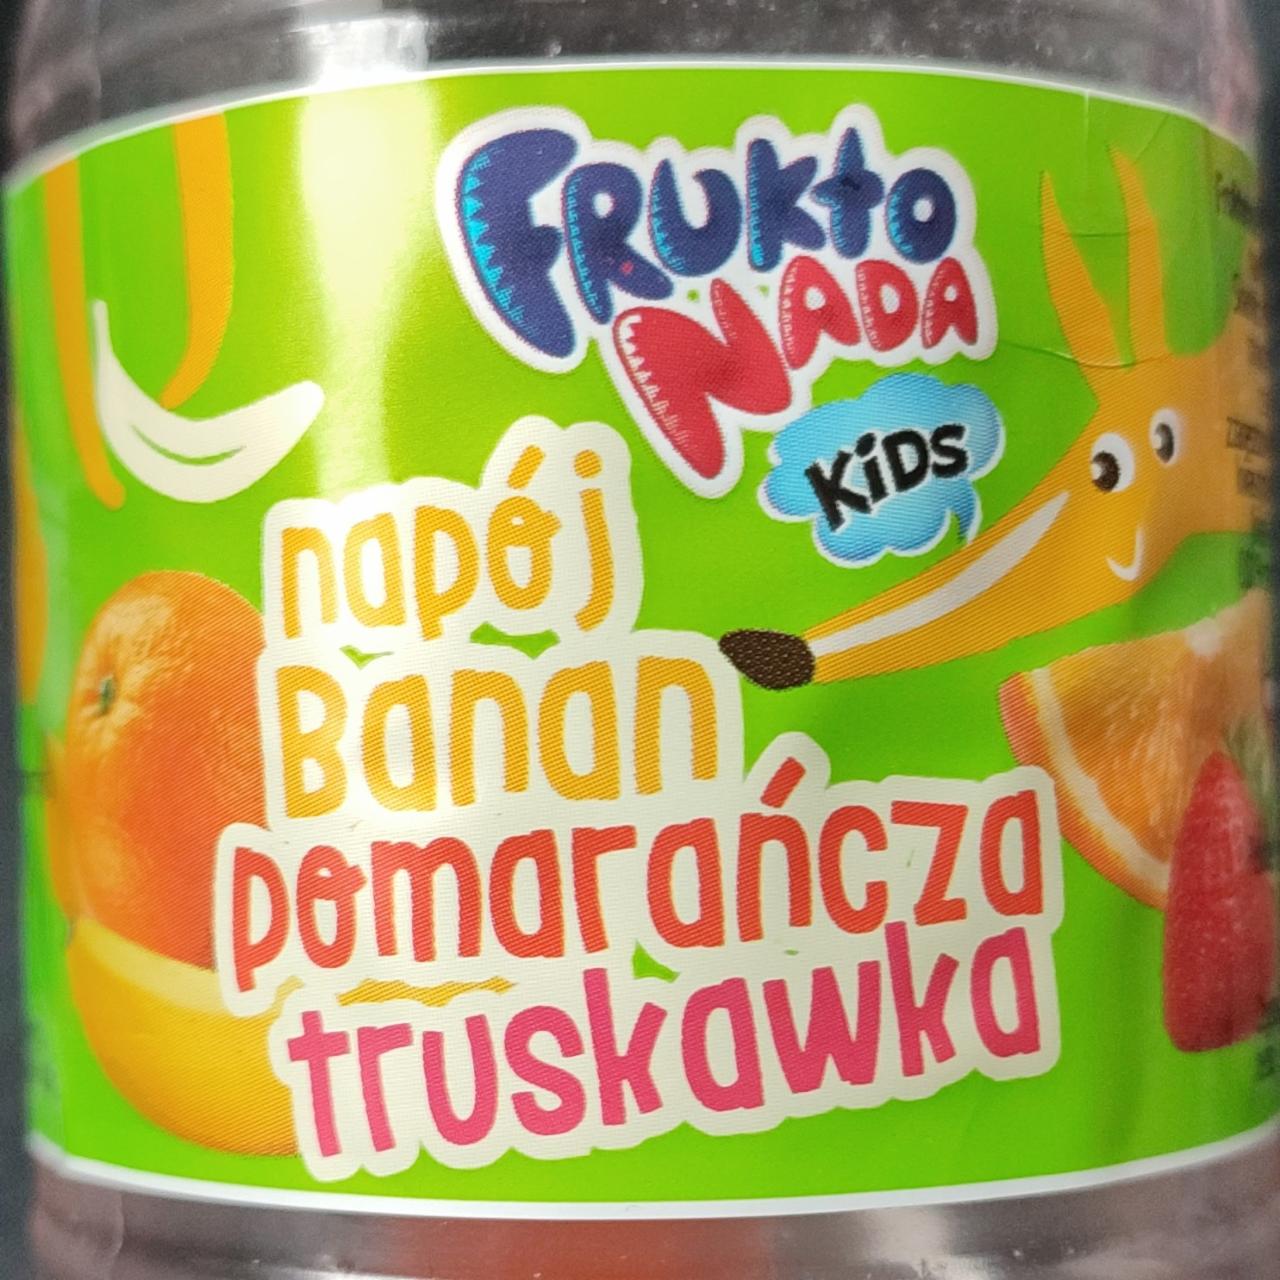 Zdjęcia - Napój banan pomarańcza truskawka Frukto Nada